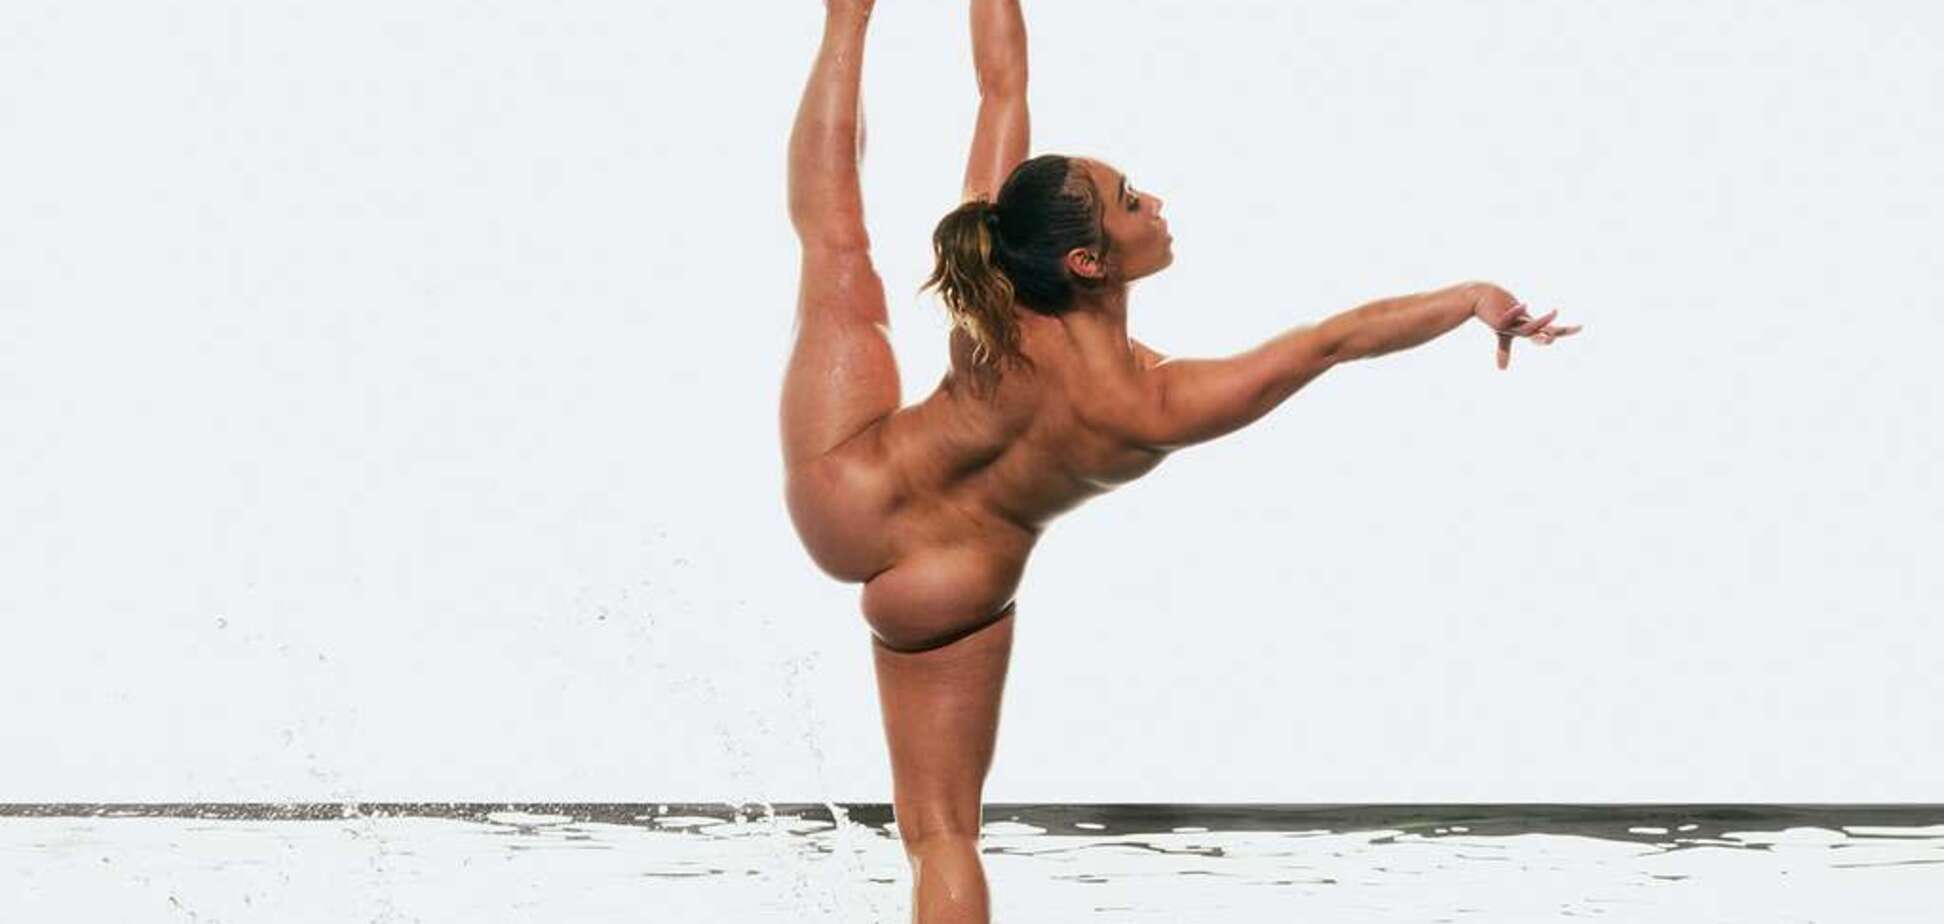 Знаменита гімнастка знялася повністю оголеною для журналу - опубліковані фото і відео